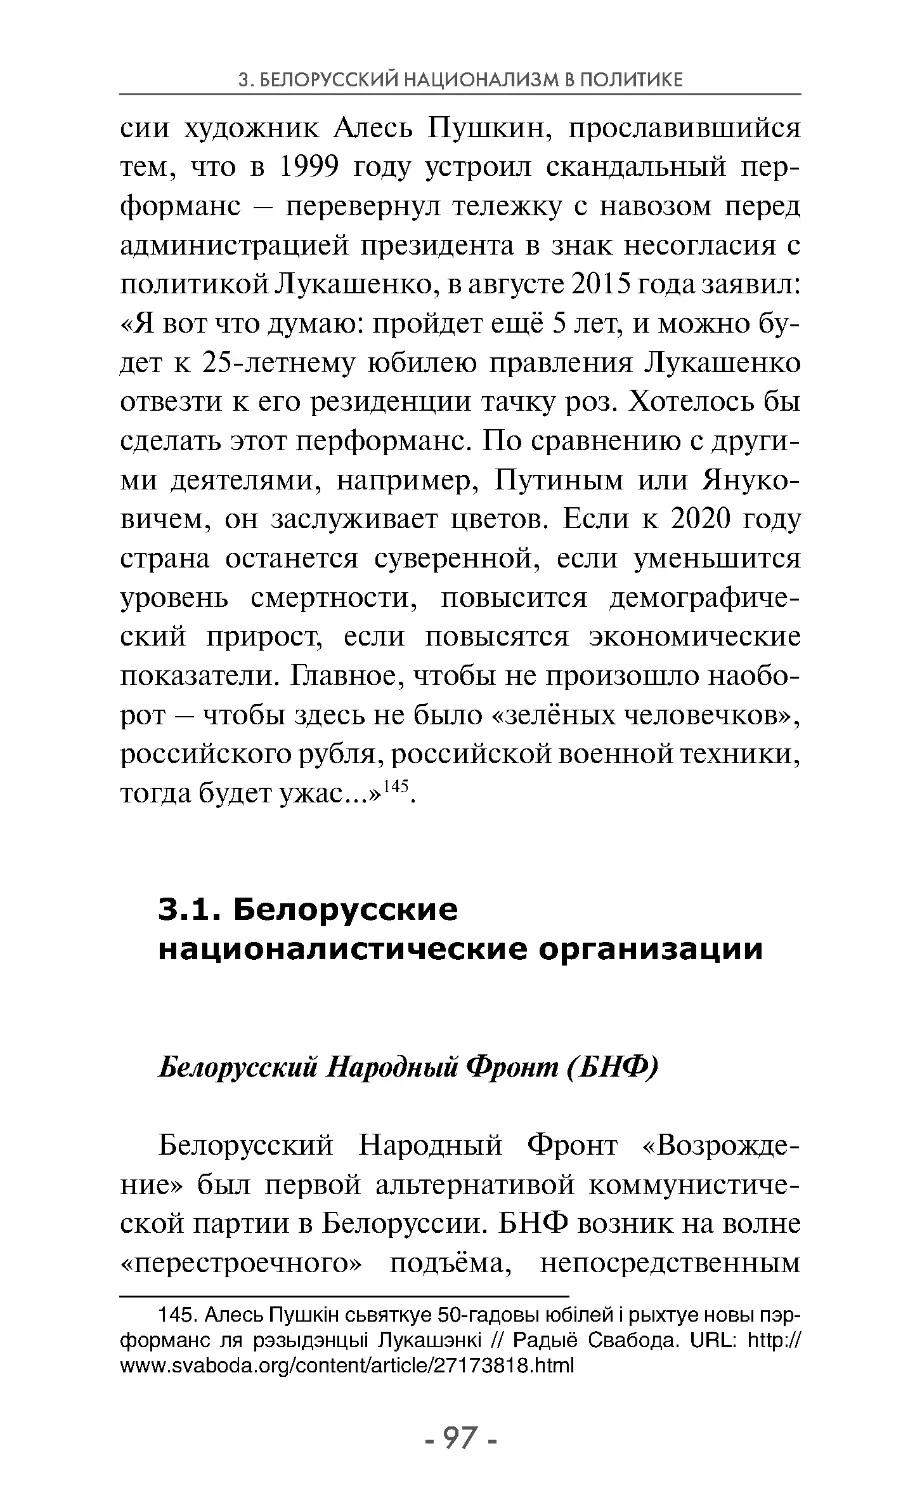 3.1. Белорусские националистические организации